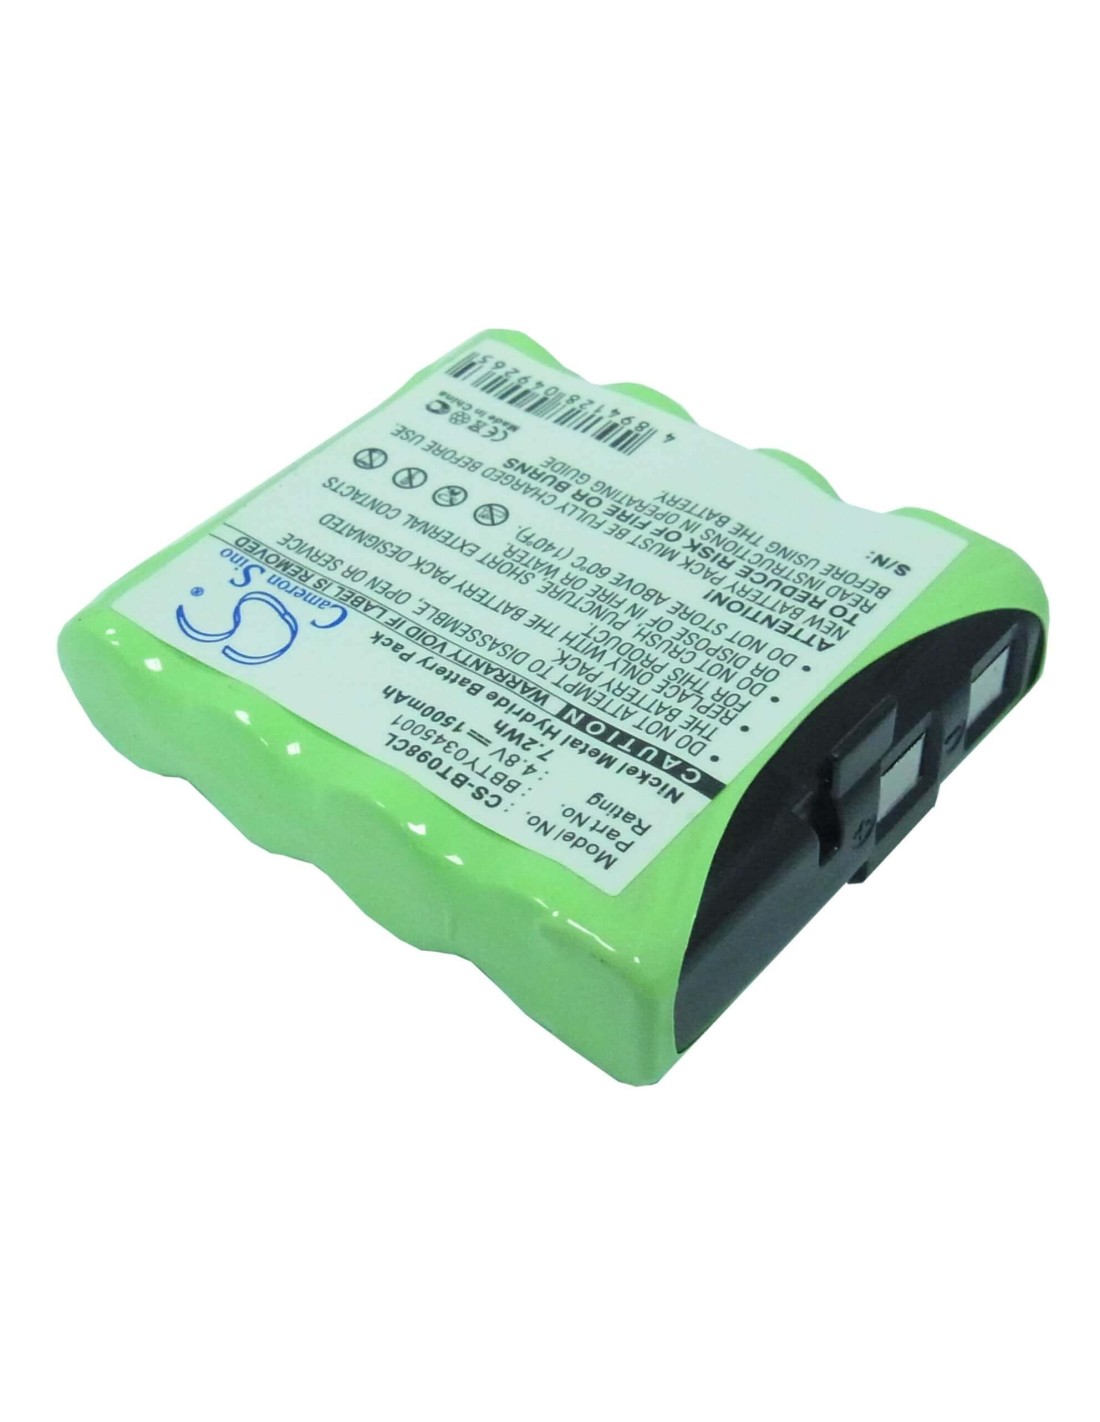 Battery for Uniden, Ct910, Ct944, Exv958, Exv98 4.8V, 1500mAh - 7.20Wh